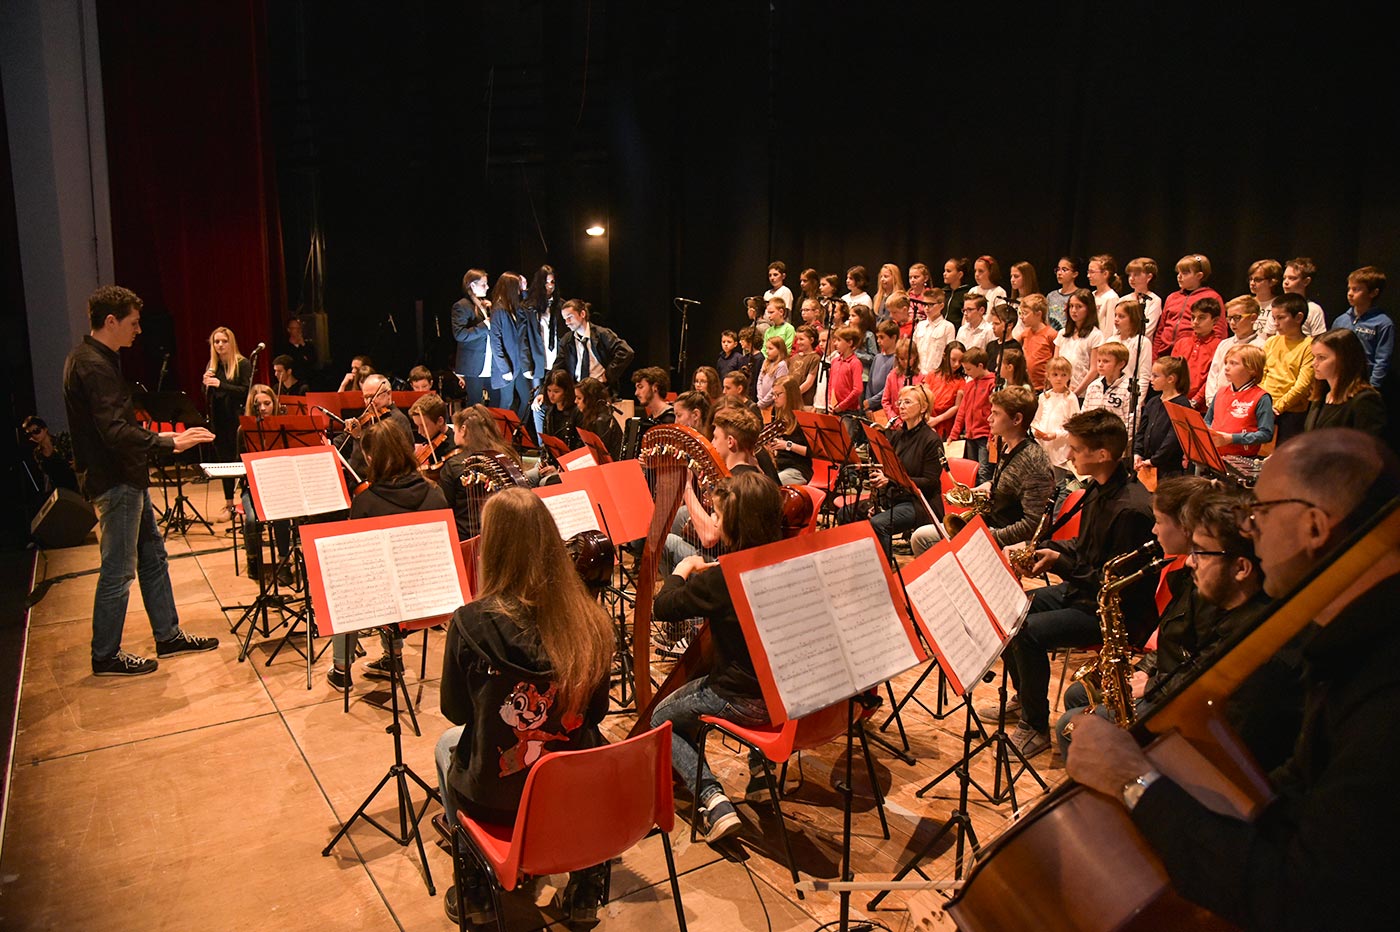 Coro e orchestra giovanile della scuola